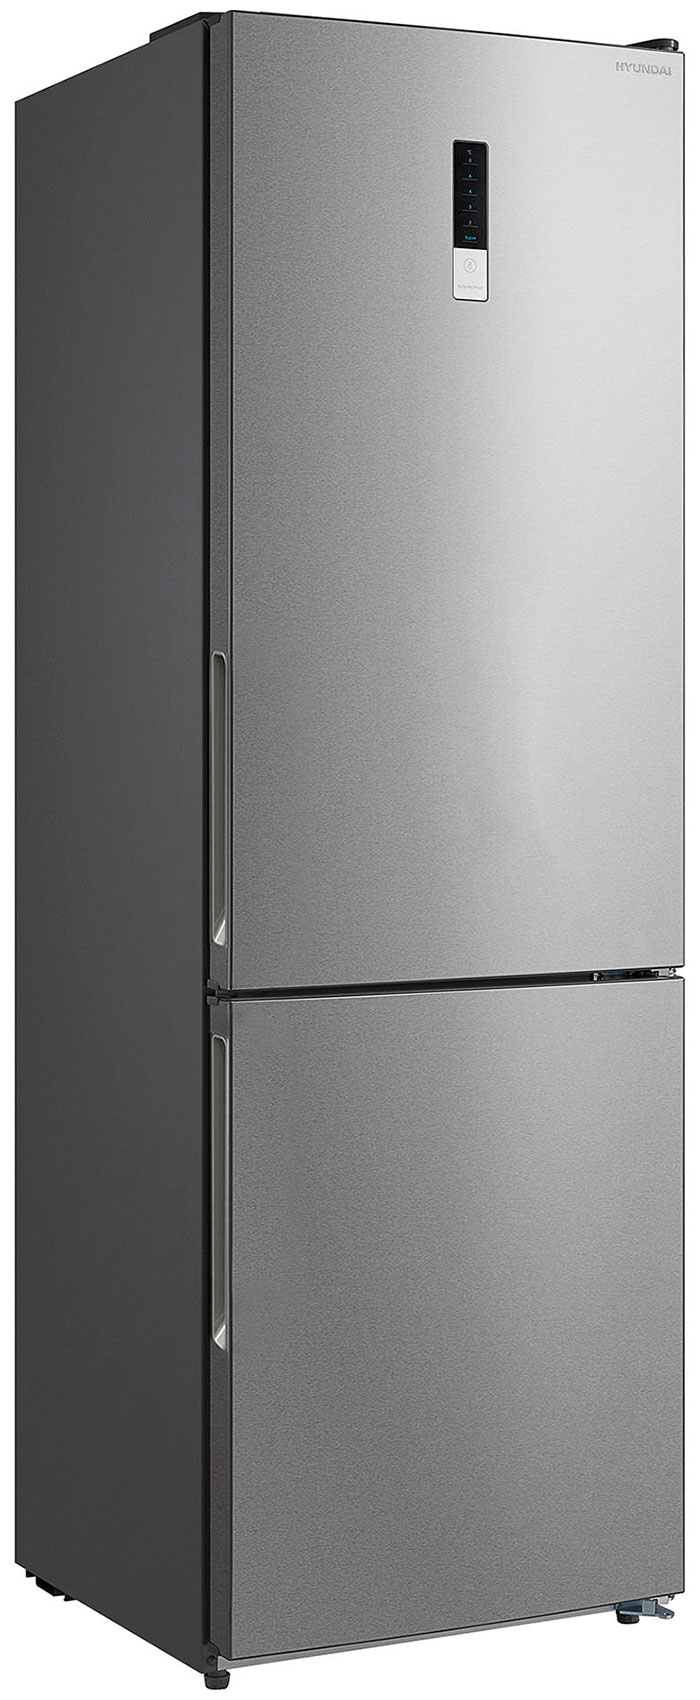 Двухкамерный холодильник Hyundai CC3595FIX нержавеющая сталь